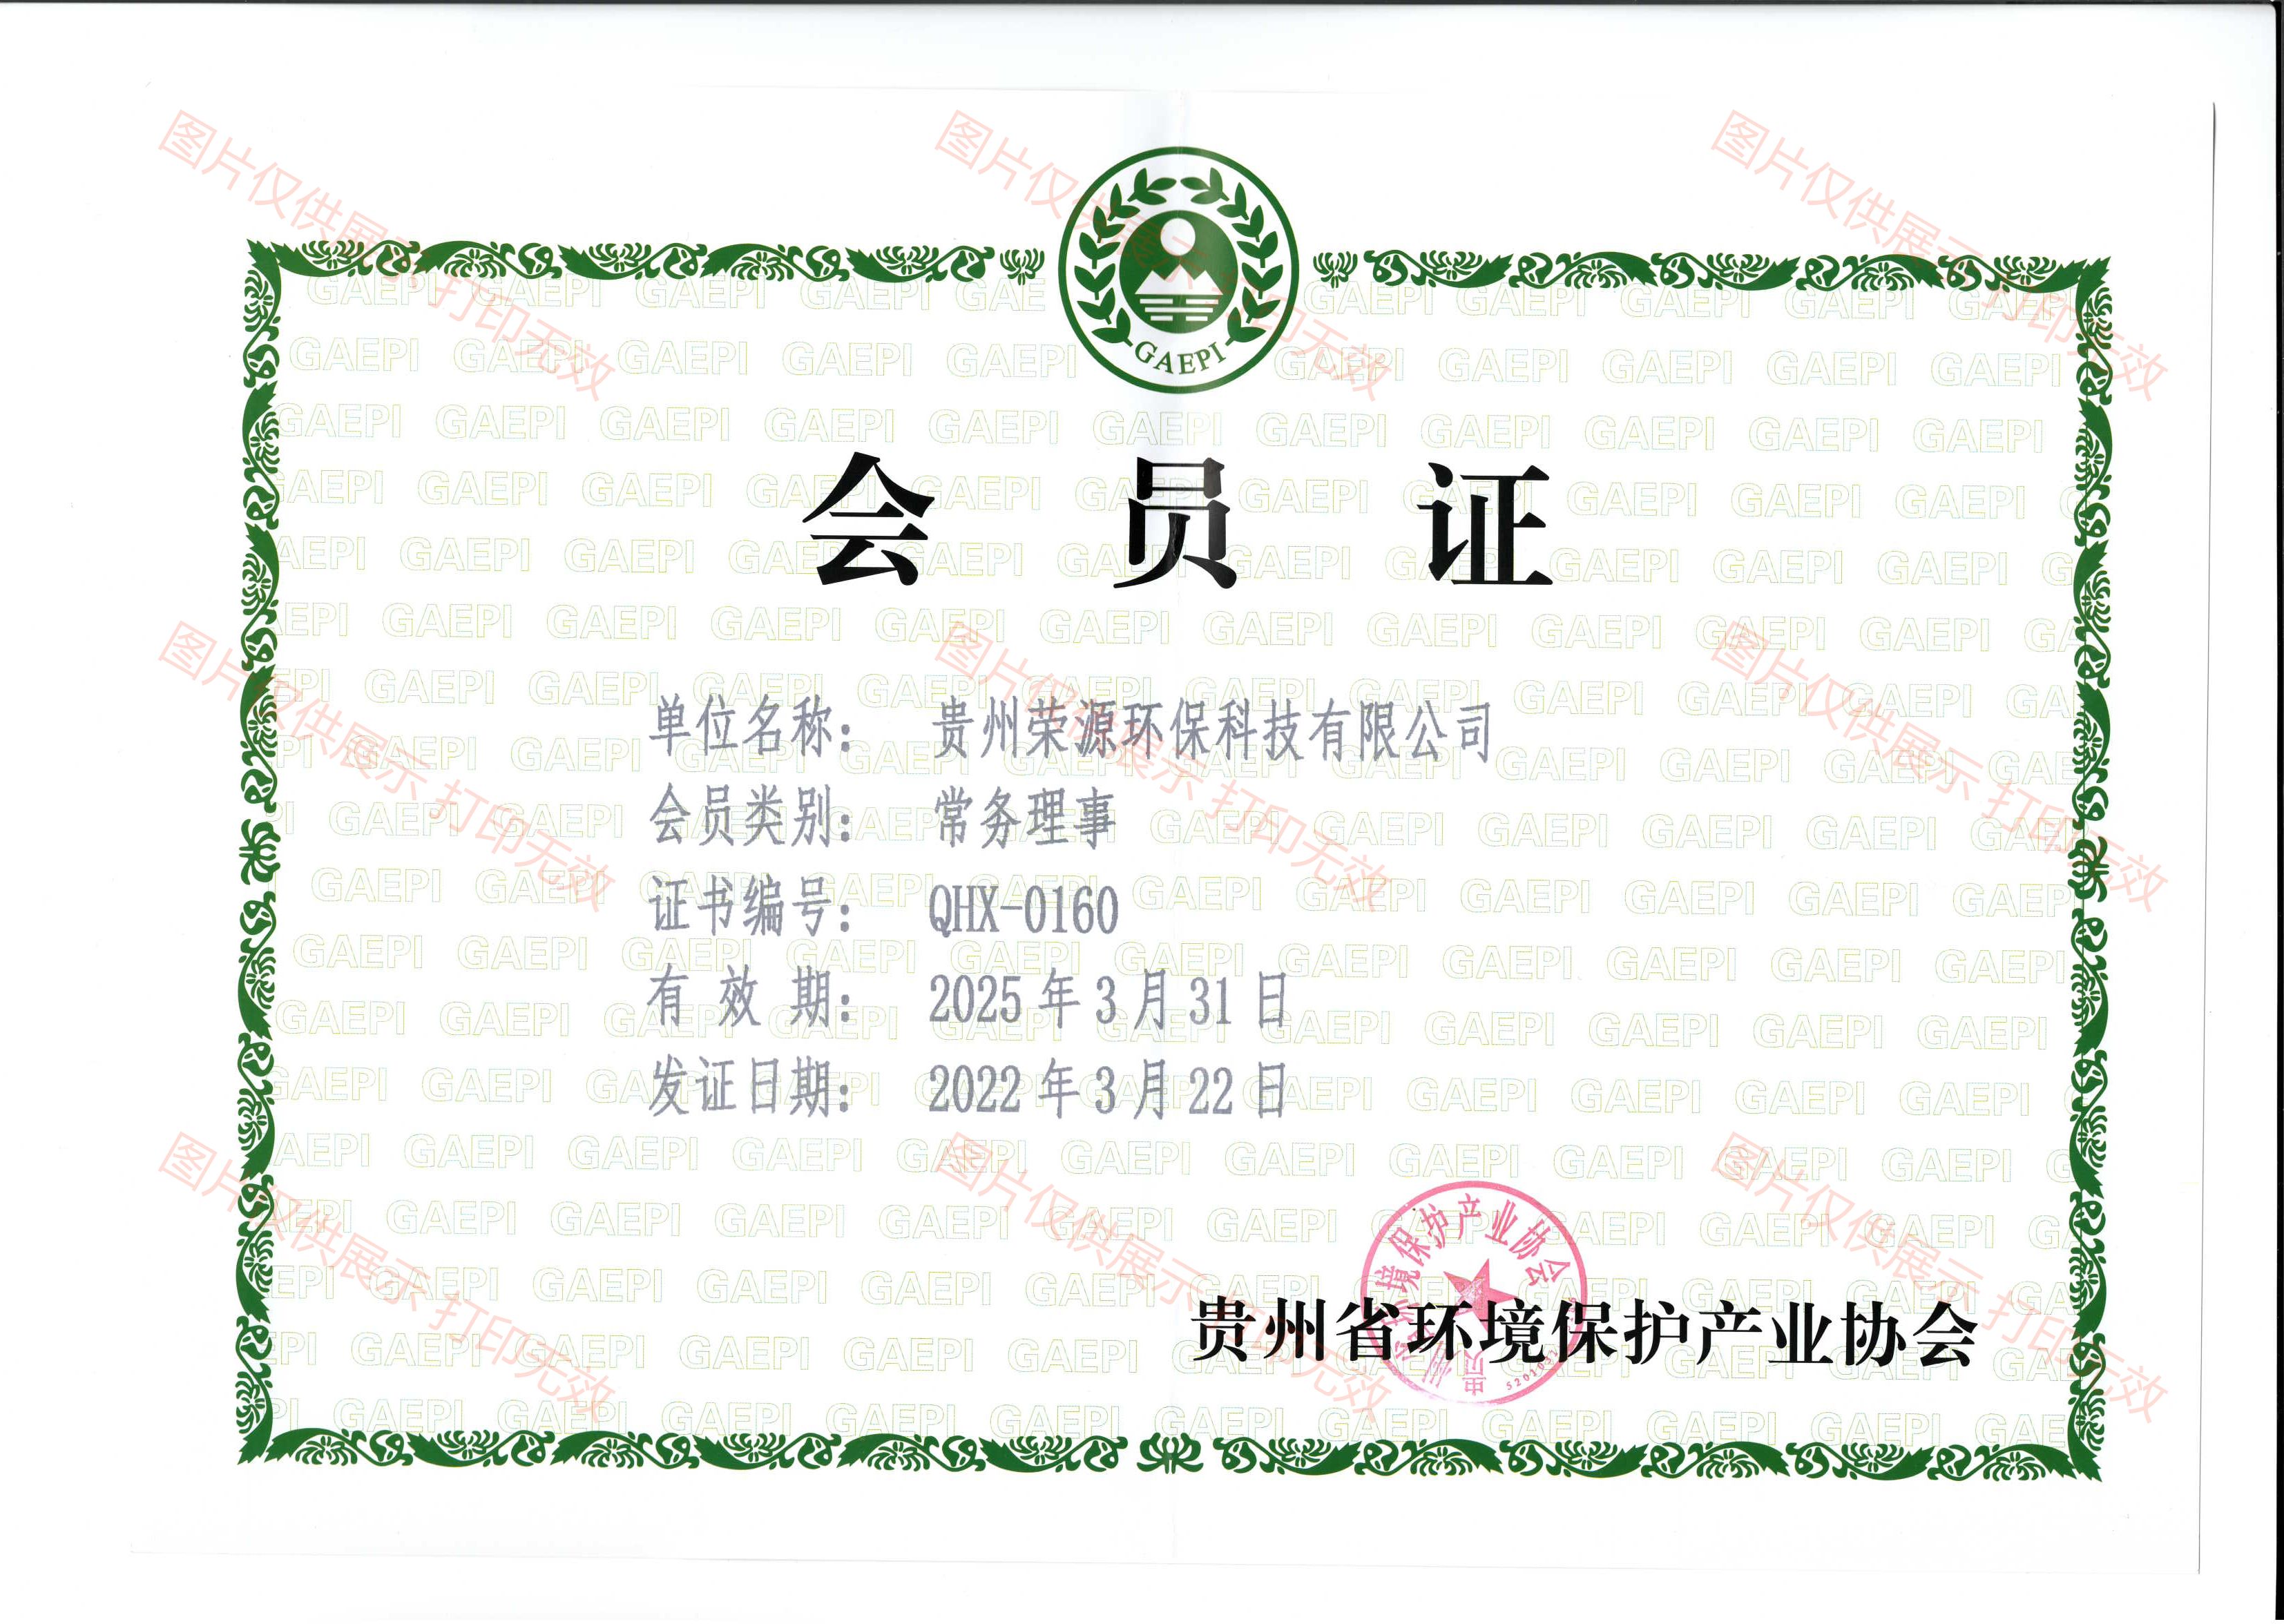 環境保護協會會員(yuán)證